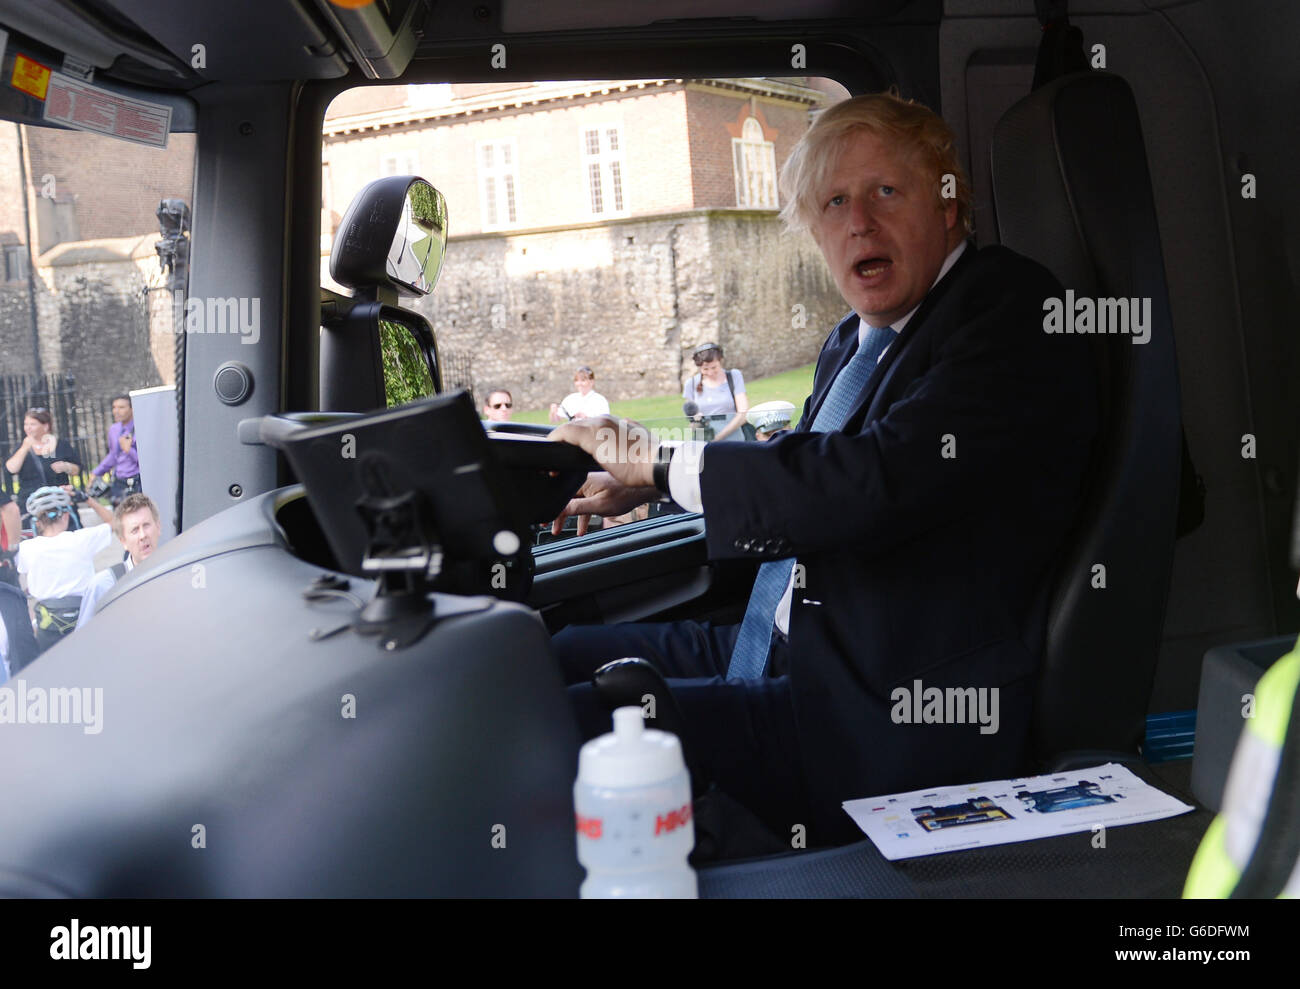 Boris Johnson, maire de Londres, est assis dans le taxi d'un VHG à Westminster, Londres, alors qu'il rencontre des policiers qui manifestent les problèmes autour des pilotes et des cyclistes du VHG dans le cadre d'une initiative conçue pour prévenir davantage de collisions avec les cyclistes. Banque D'Images